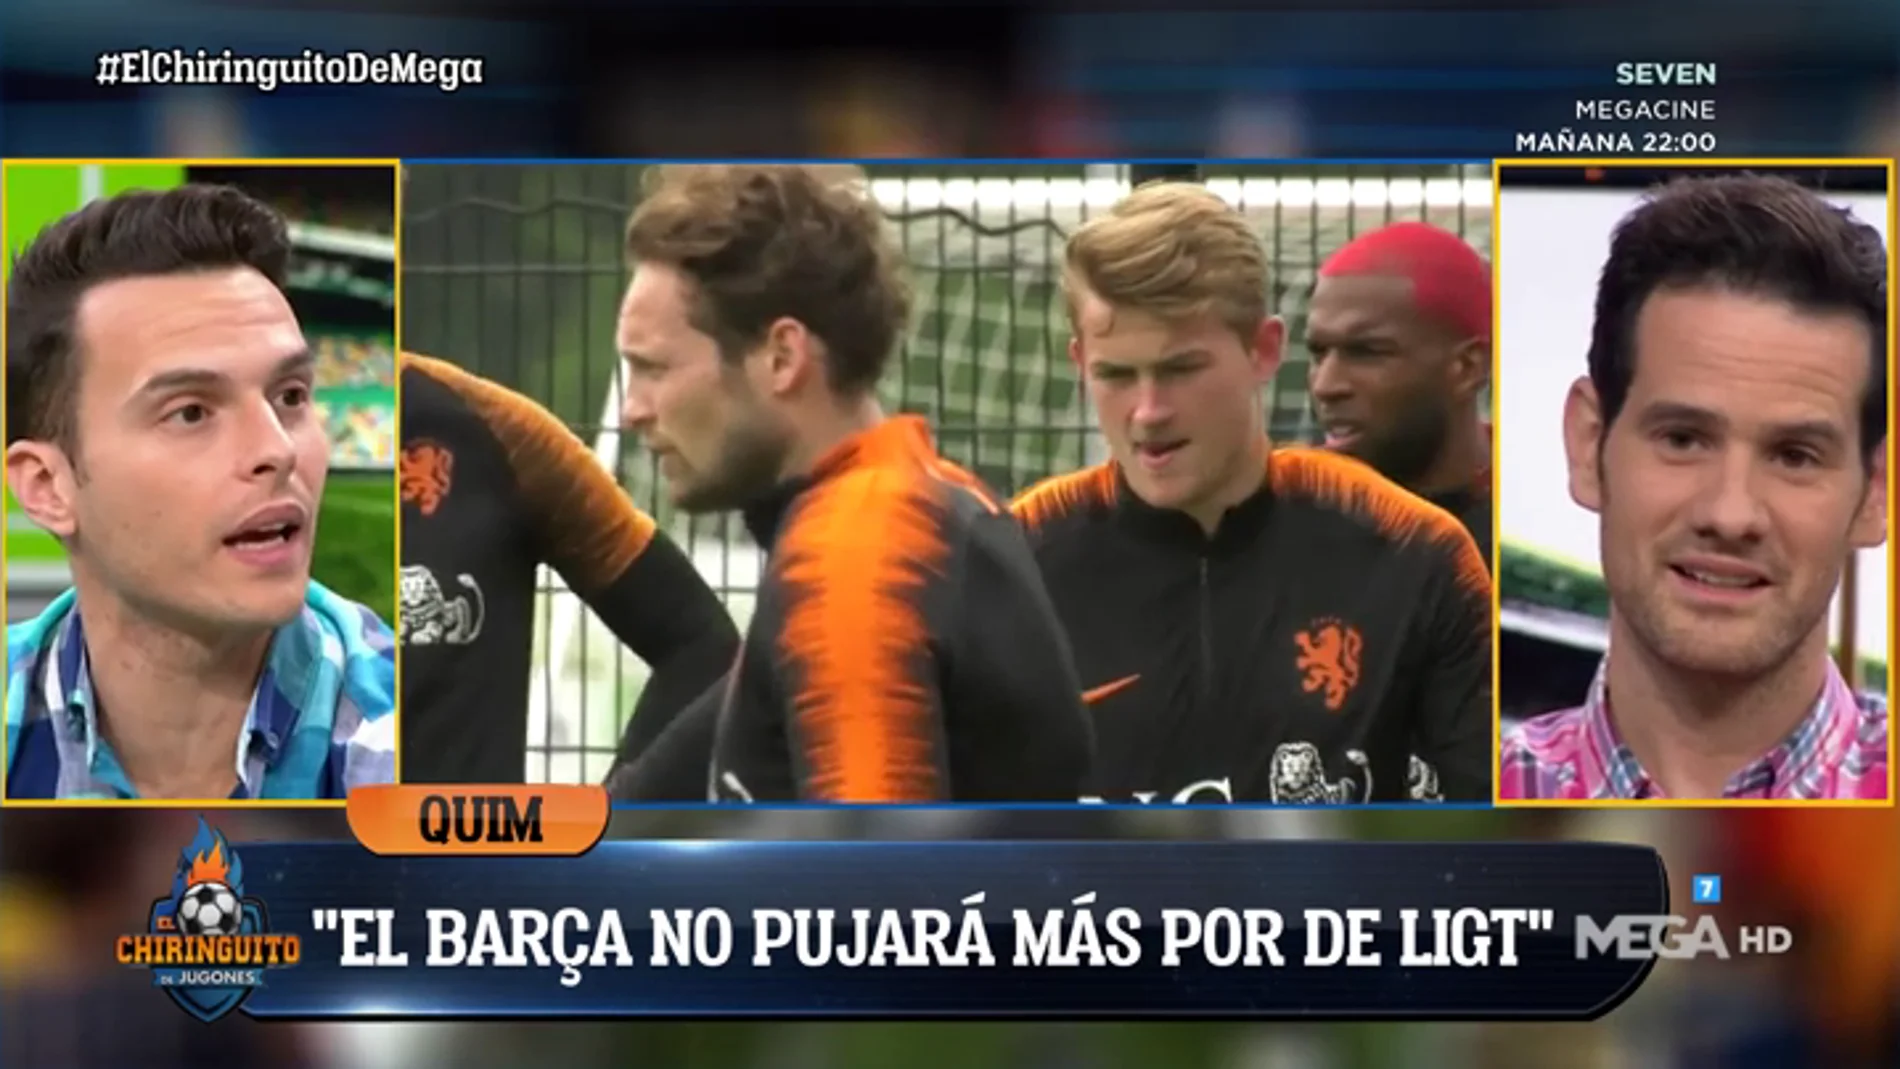 Quim Domènech: "El Barça ya le ha dicho a De Ligt que no le va a subir más el salario"